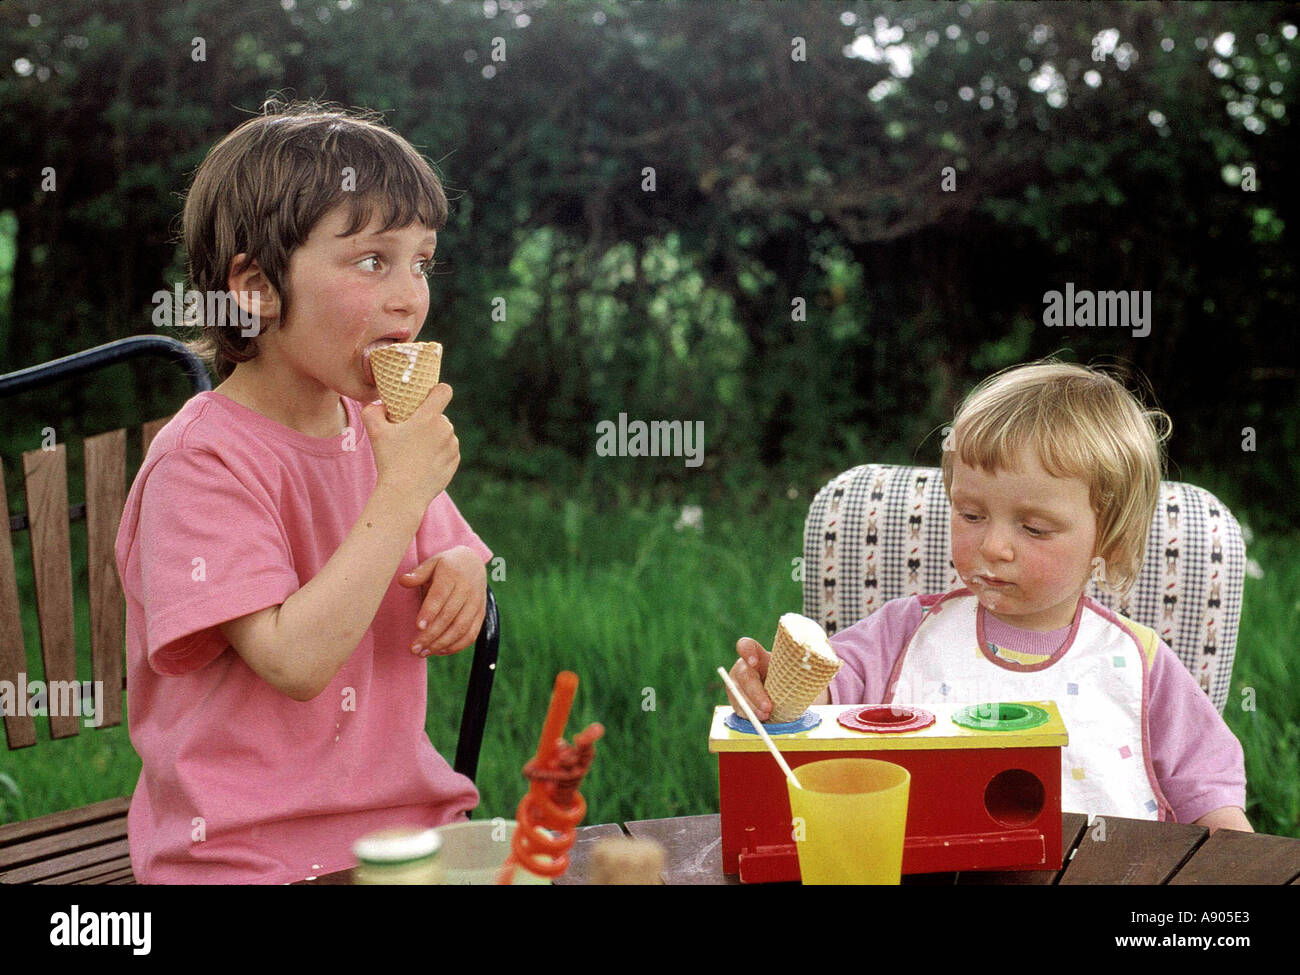 Deux jeunes enfants de manger des glaces et jouer avec ses jouets Banque D'Images